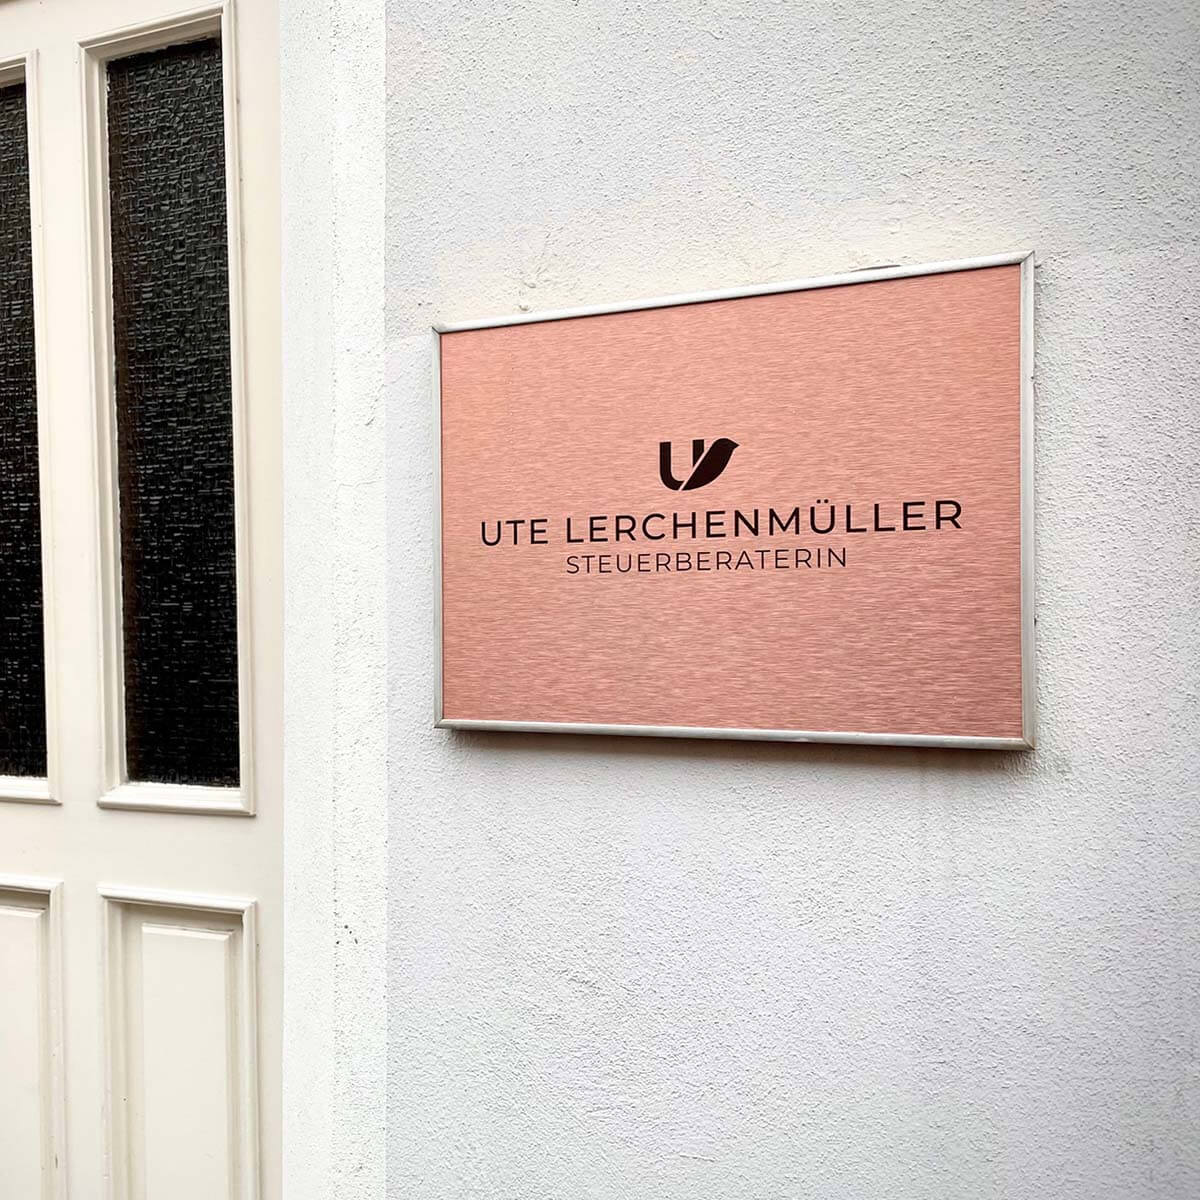 Corporate Design - Eingangsschild Ute Lerchenmüller - designed by Dreispringer